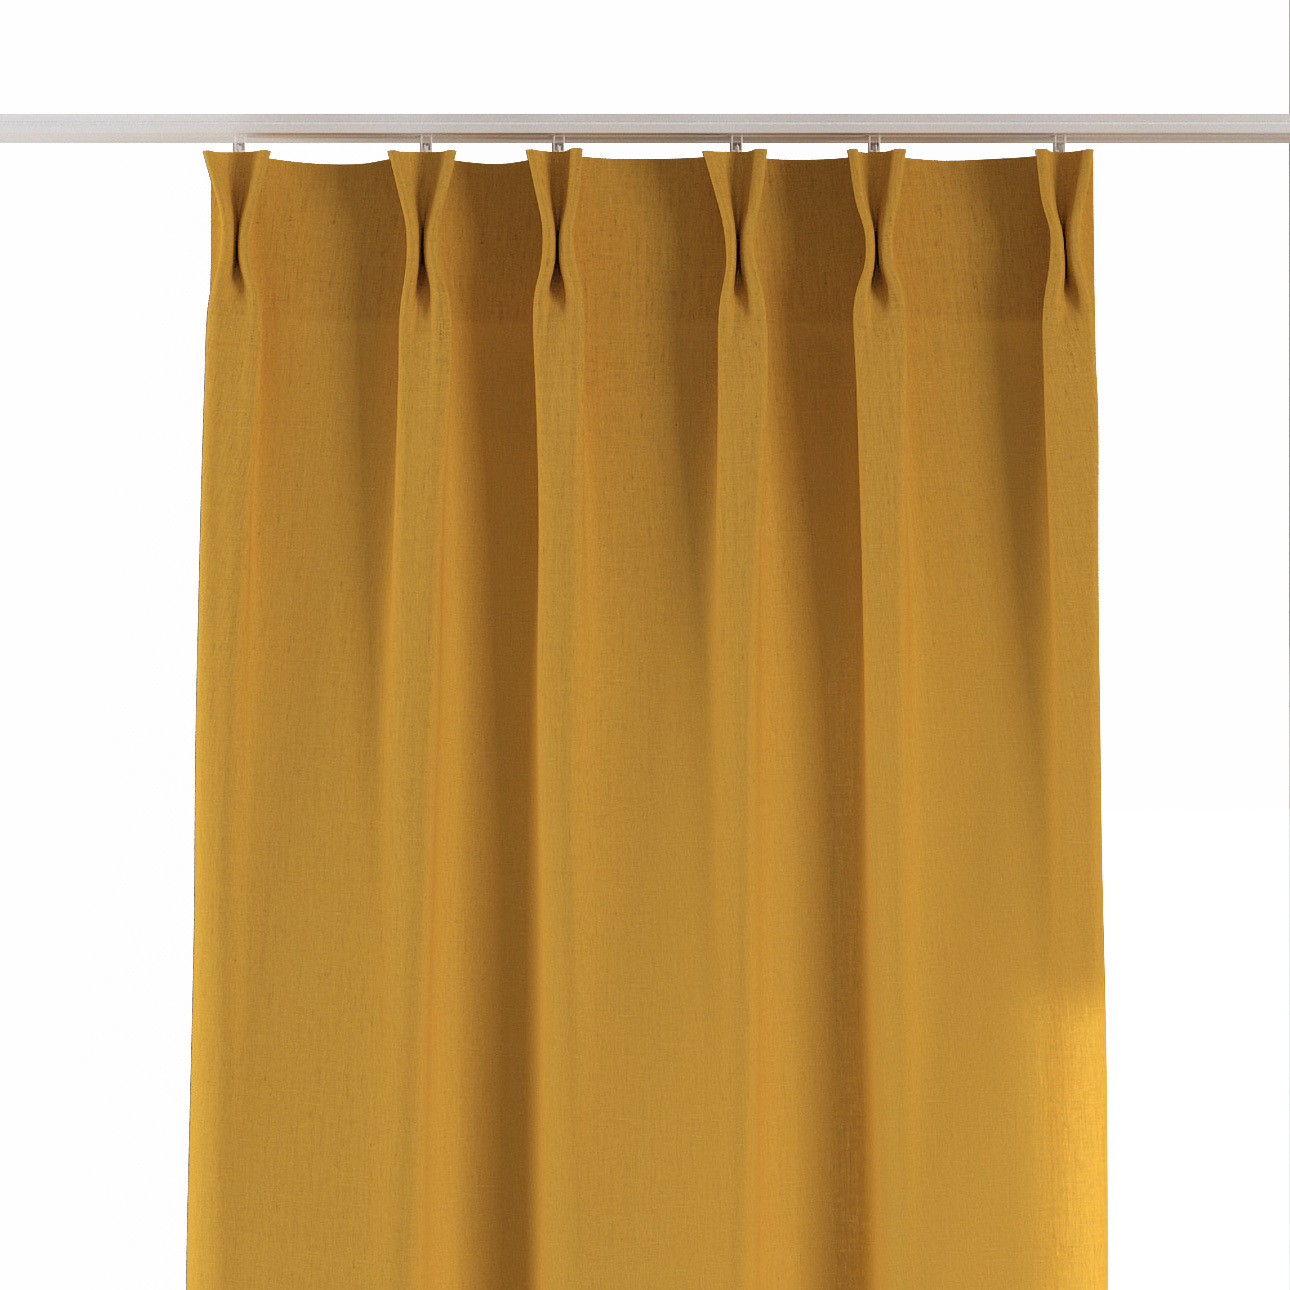 Vorhang mit flämischen 2-er Falten, honiggelb, Leinen (159-14) günstig online kaufen